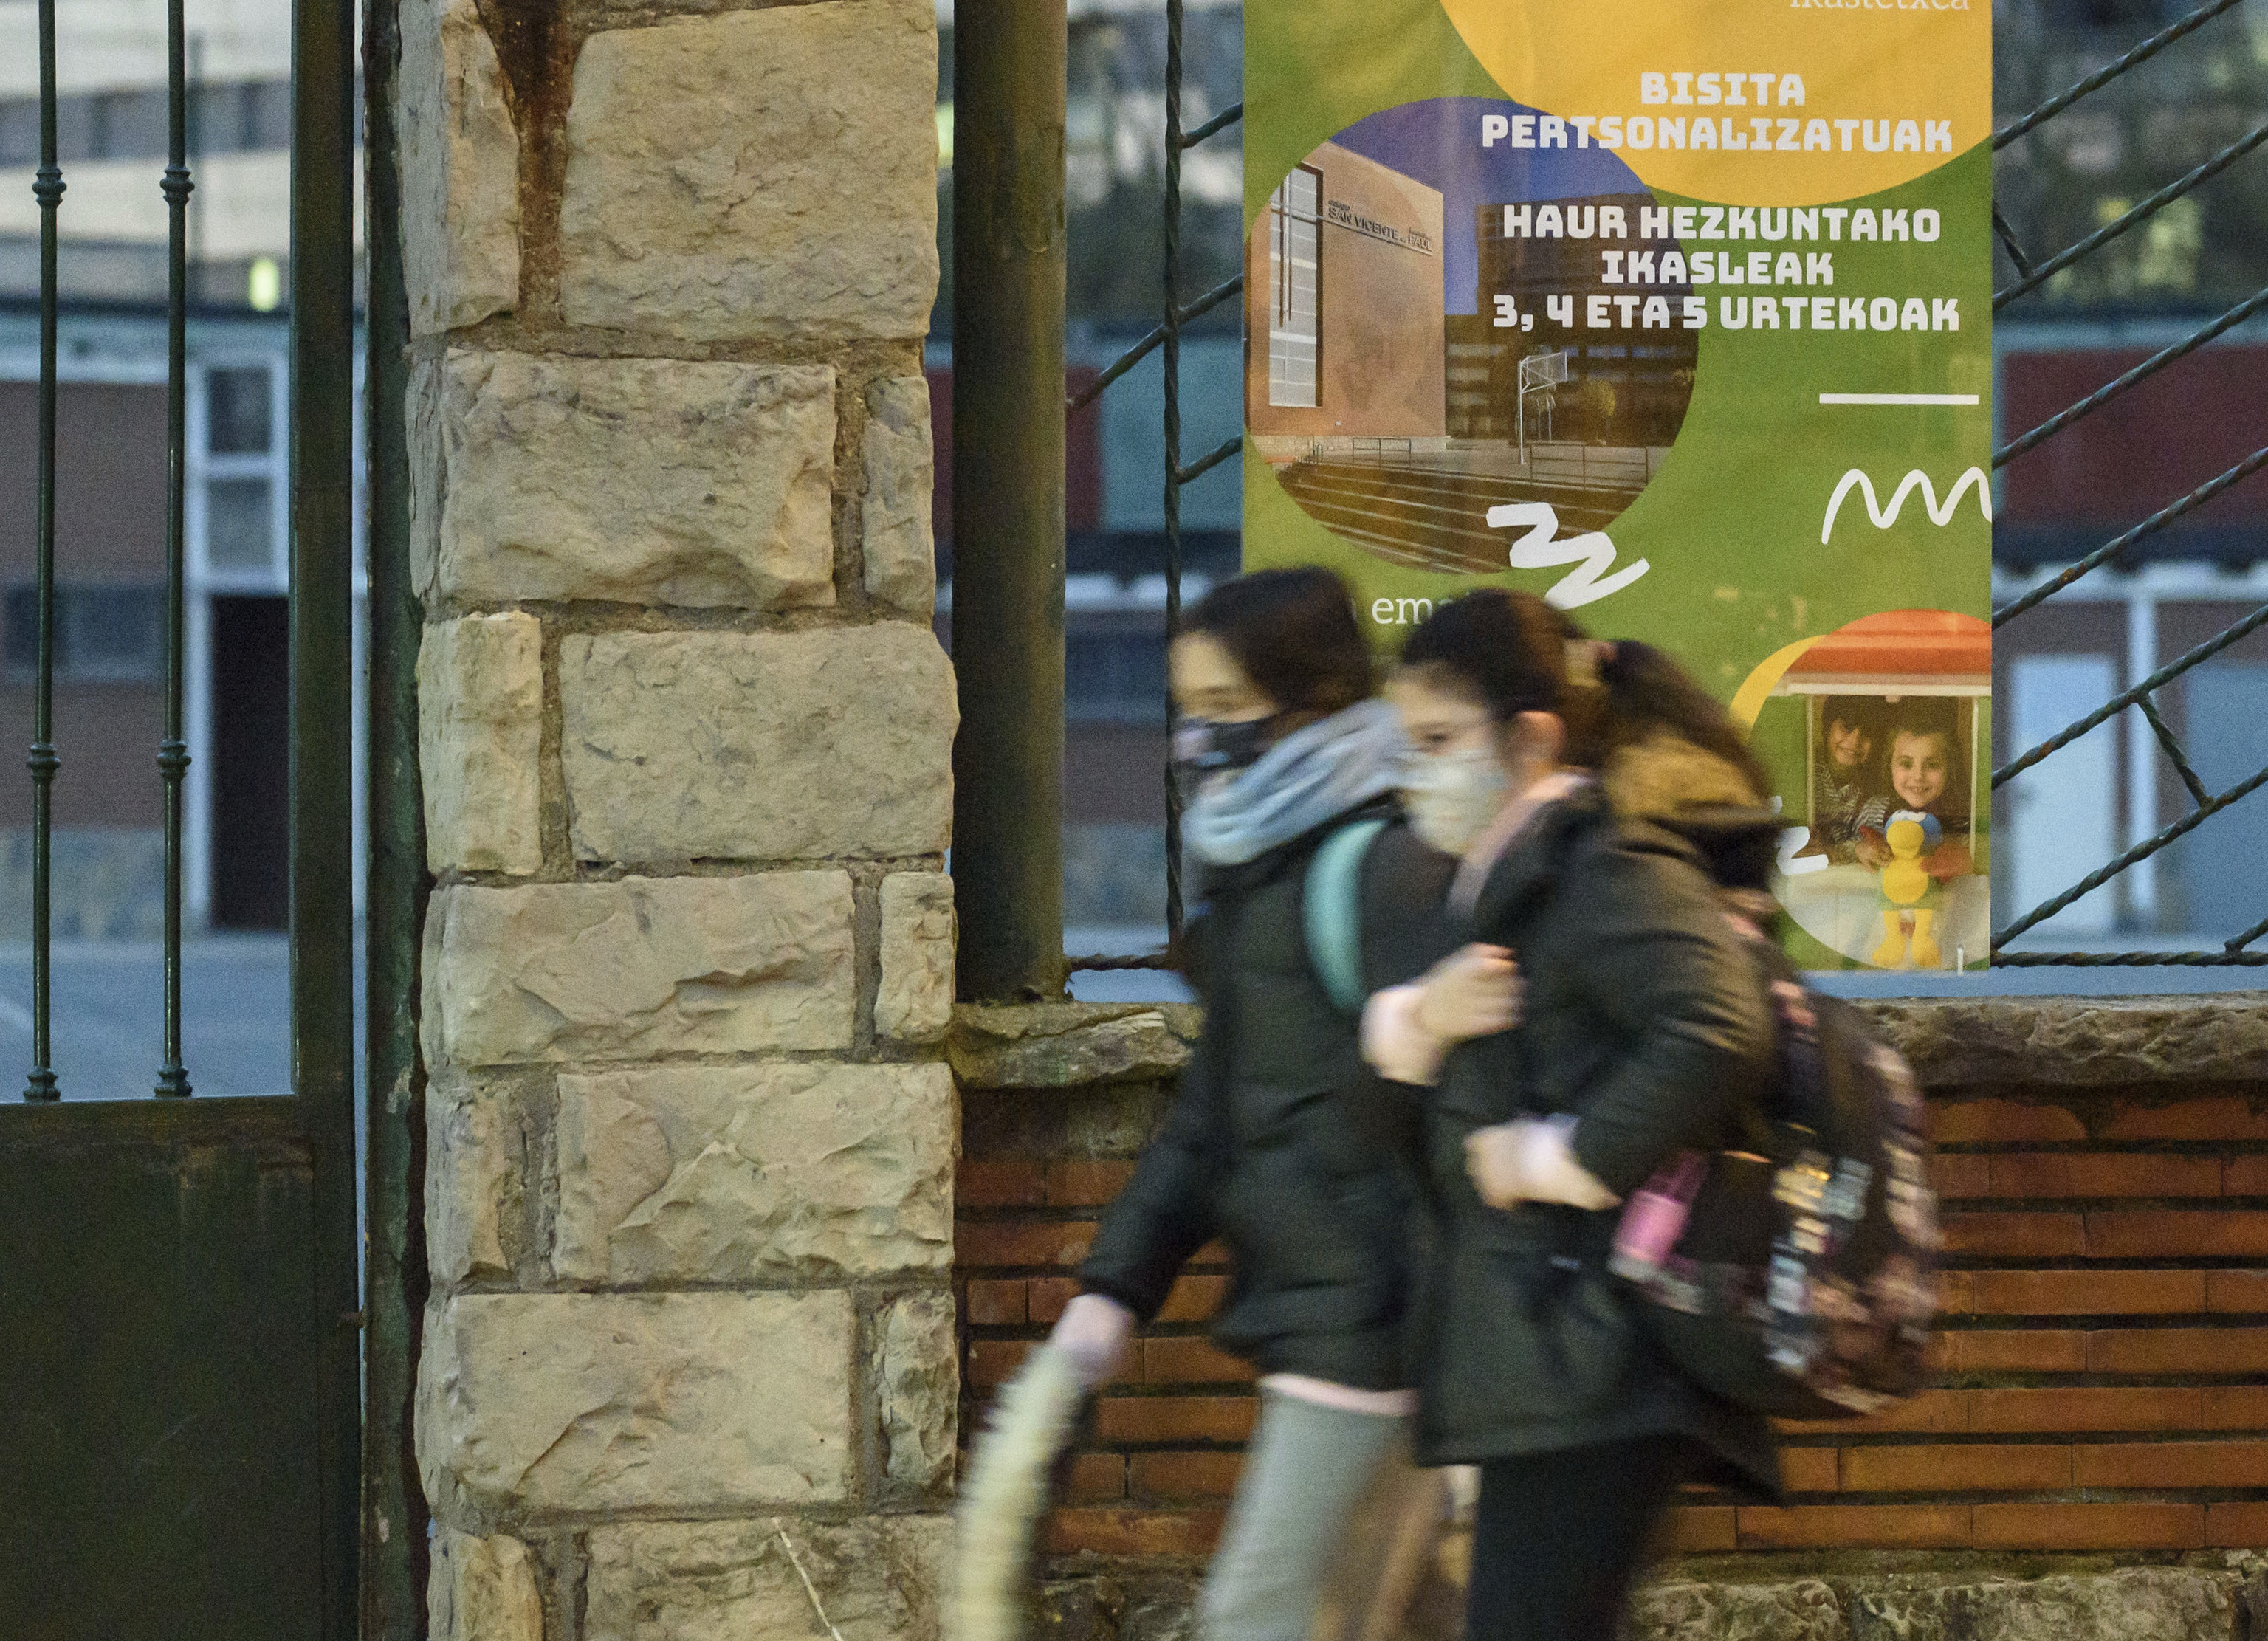 Dos jóvenes caminan junto a un cartel en euskera en un centro educativo de Vizcaya.